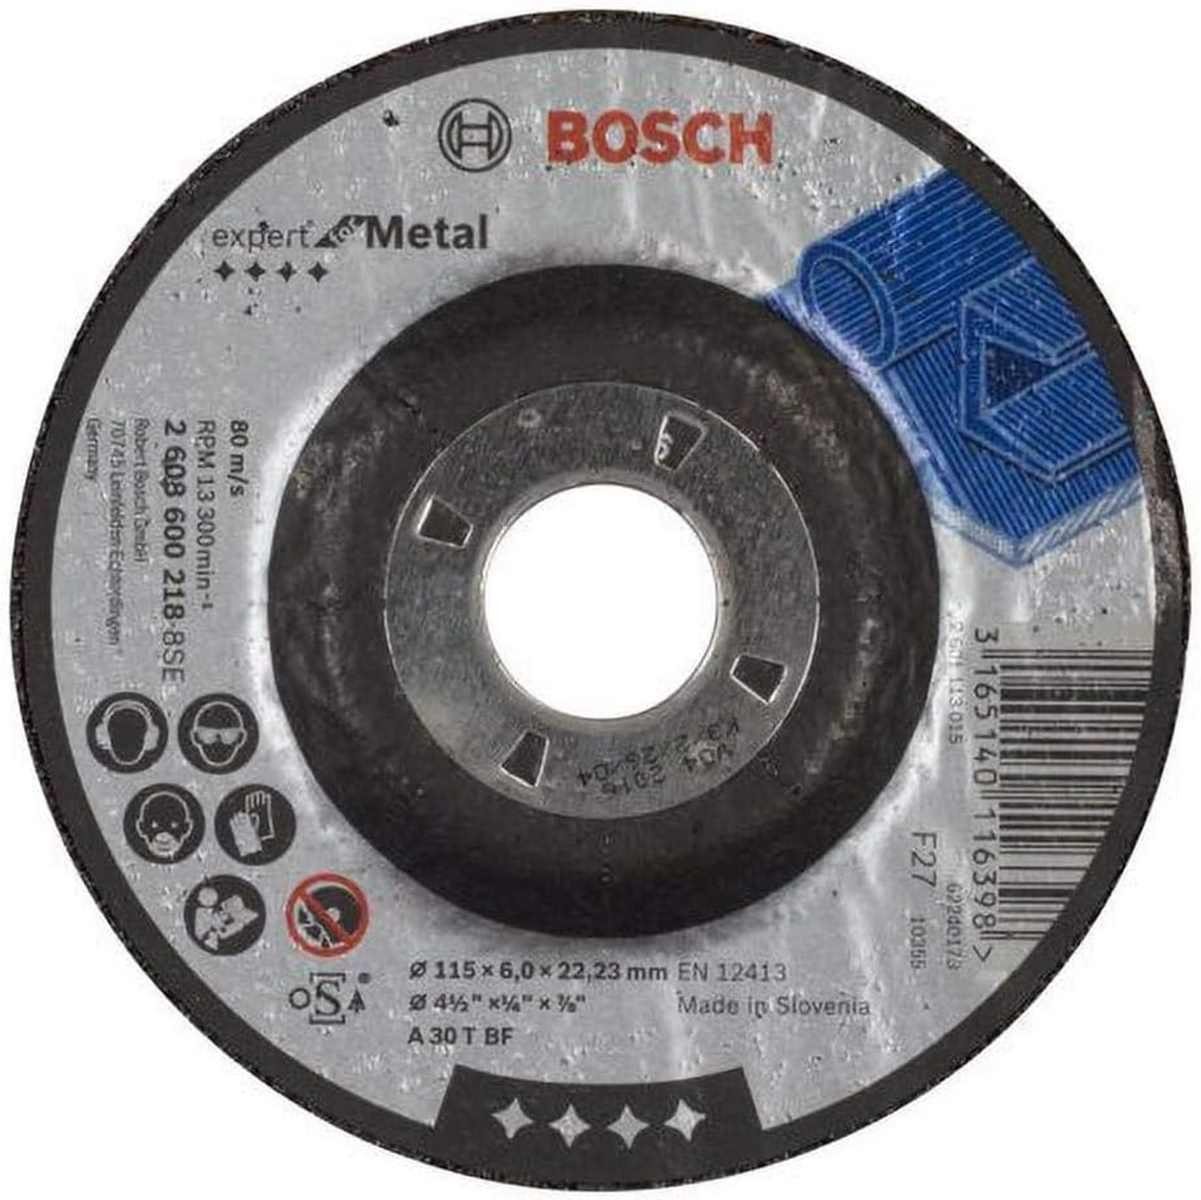 BOSCH Bohrfutter Bosch 115 for BF T mm A Expert Metal 6 mm Schruppscheibe gekröpft 30